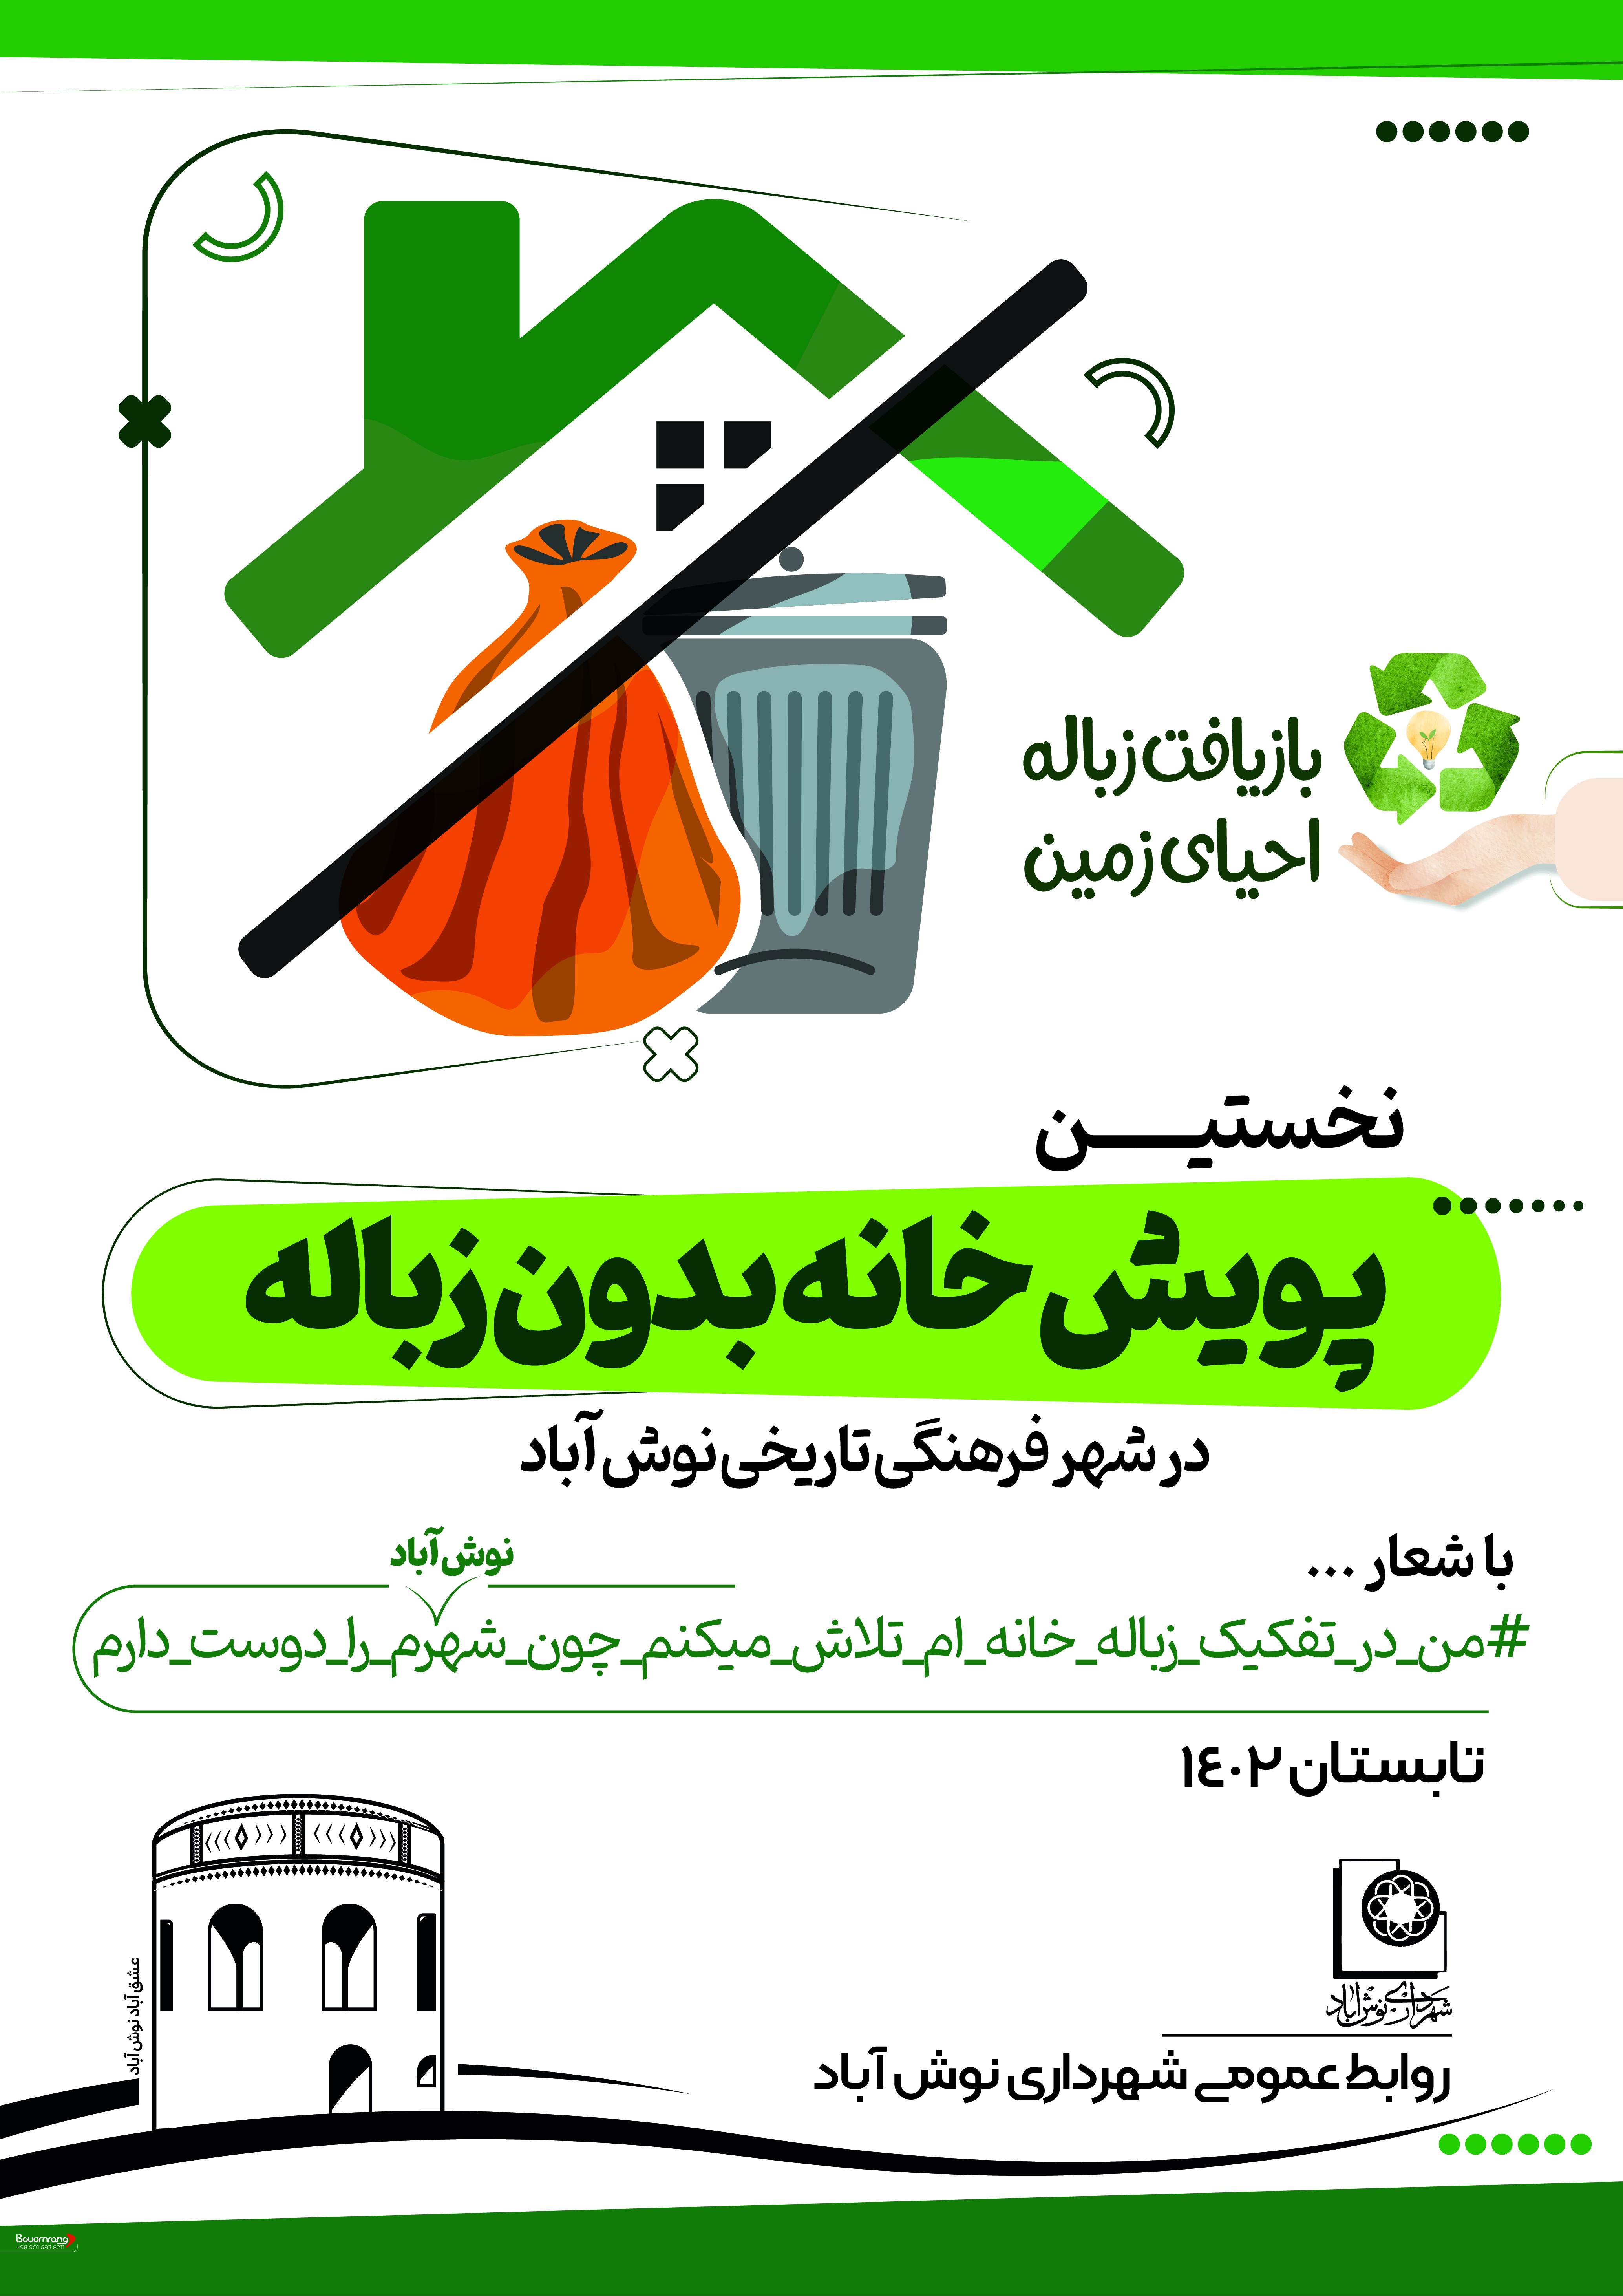 نخستین پویش شهر بدون زباله در شهر نوش آباد